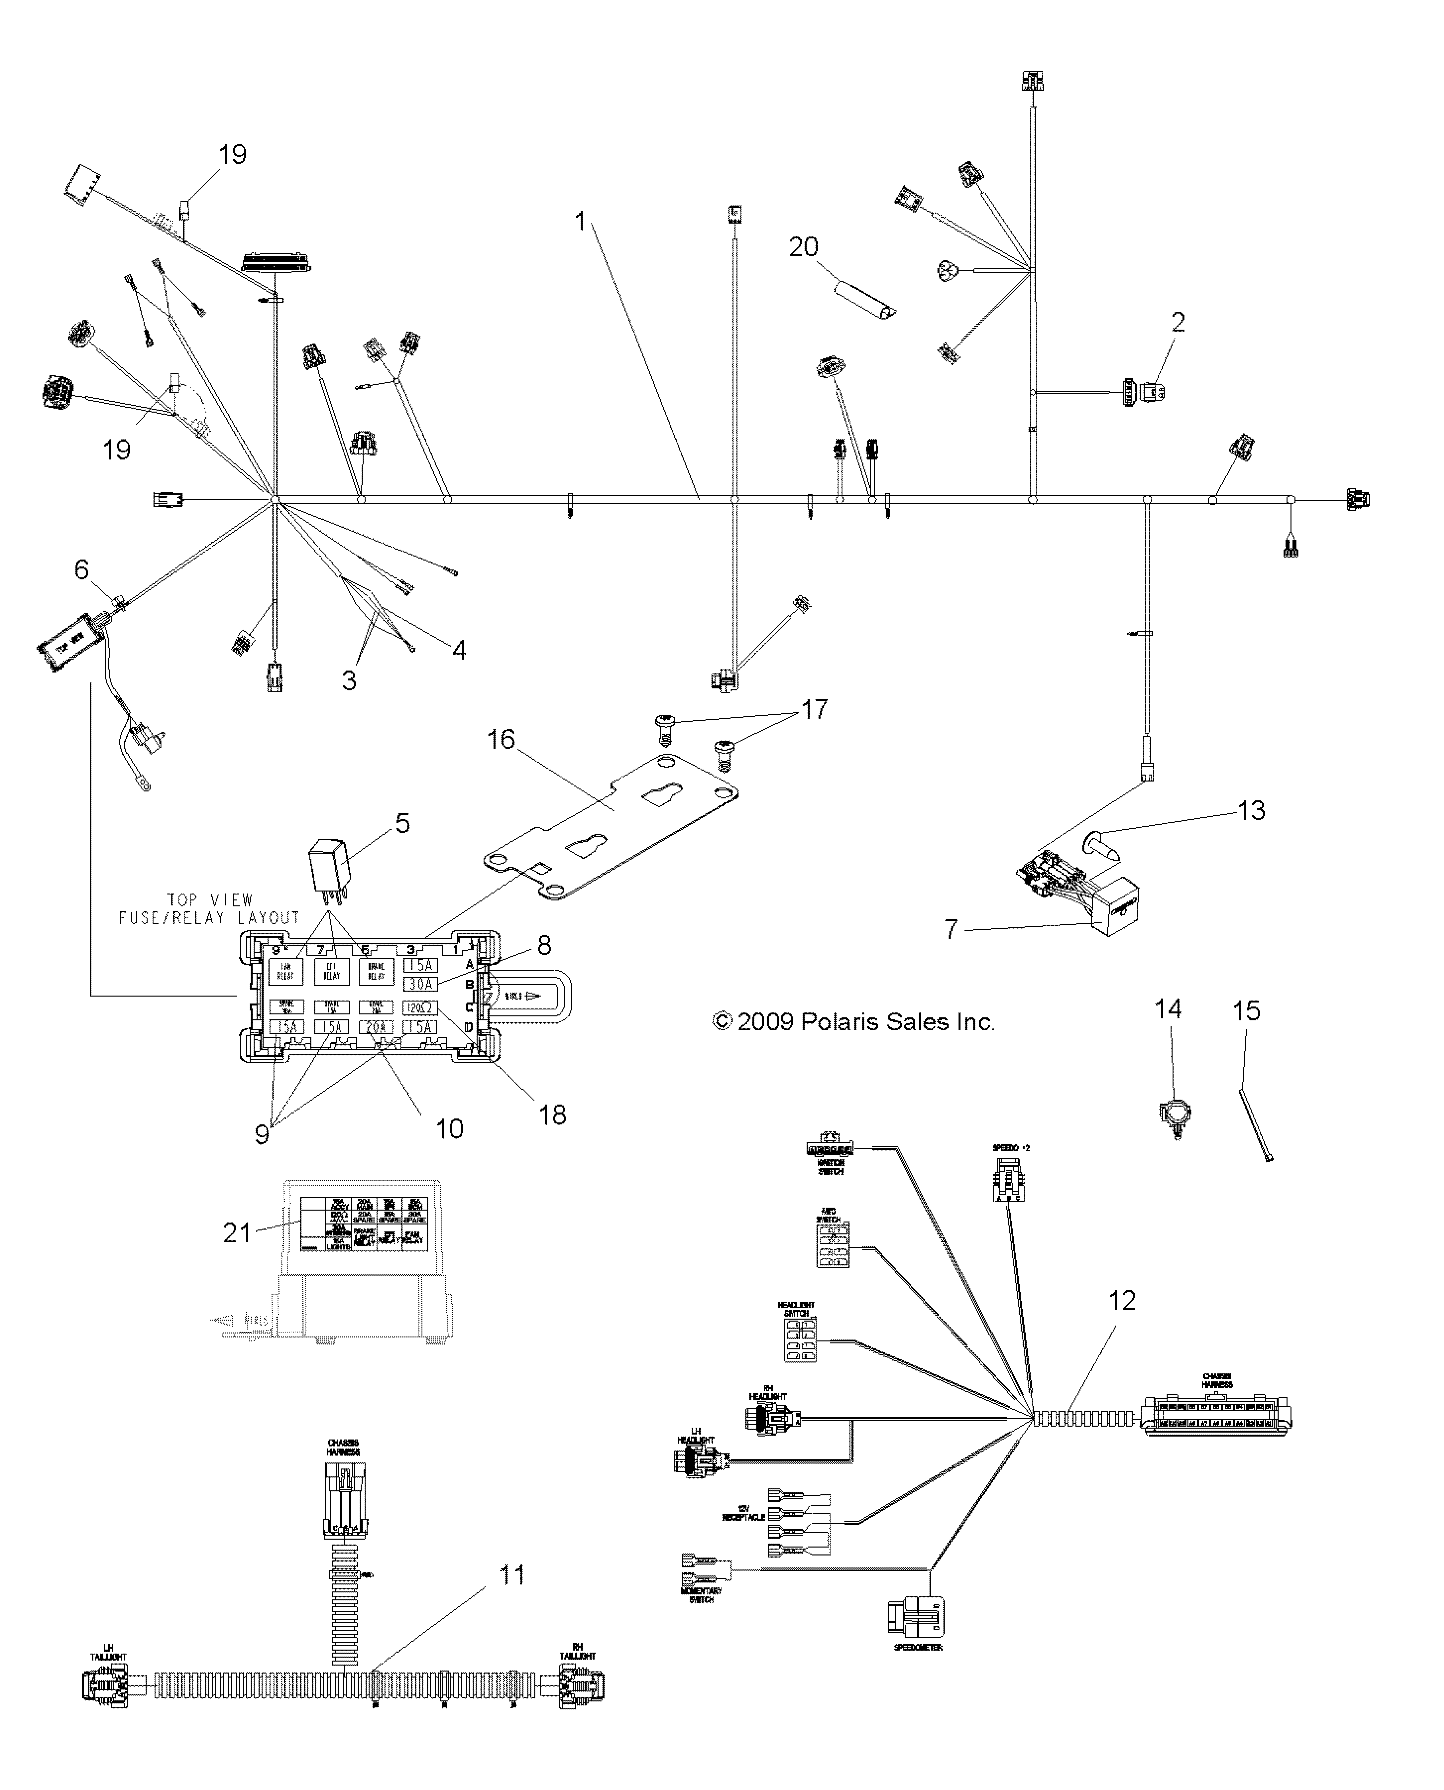 Foto diagrama Polaris que contem a peça 4012193